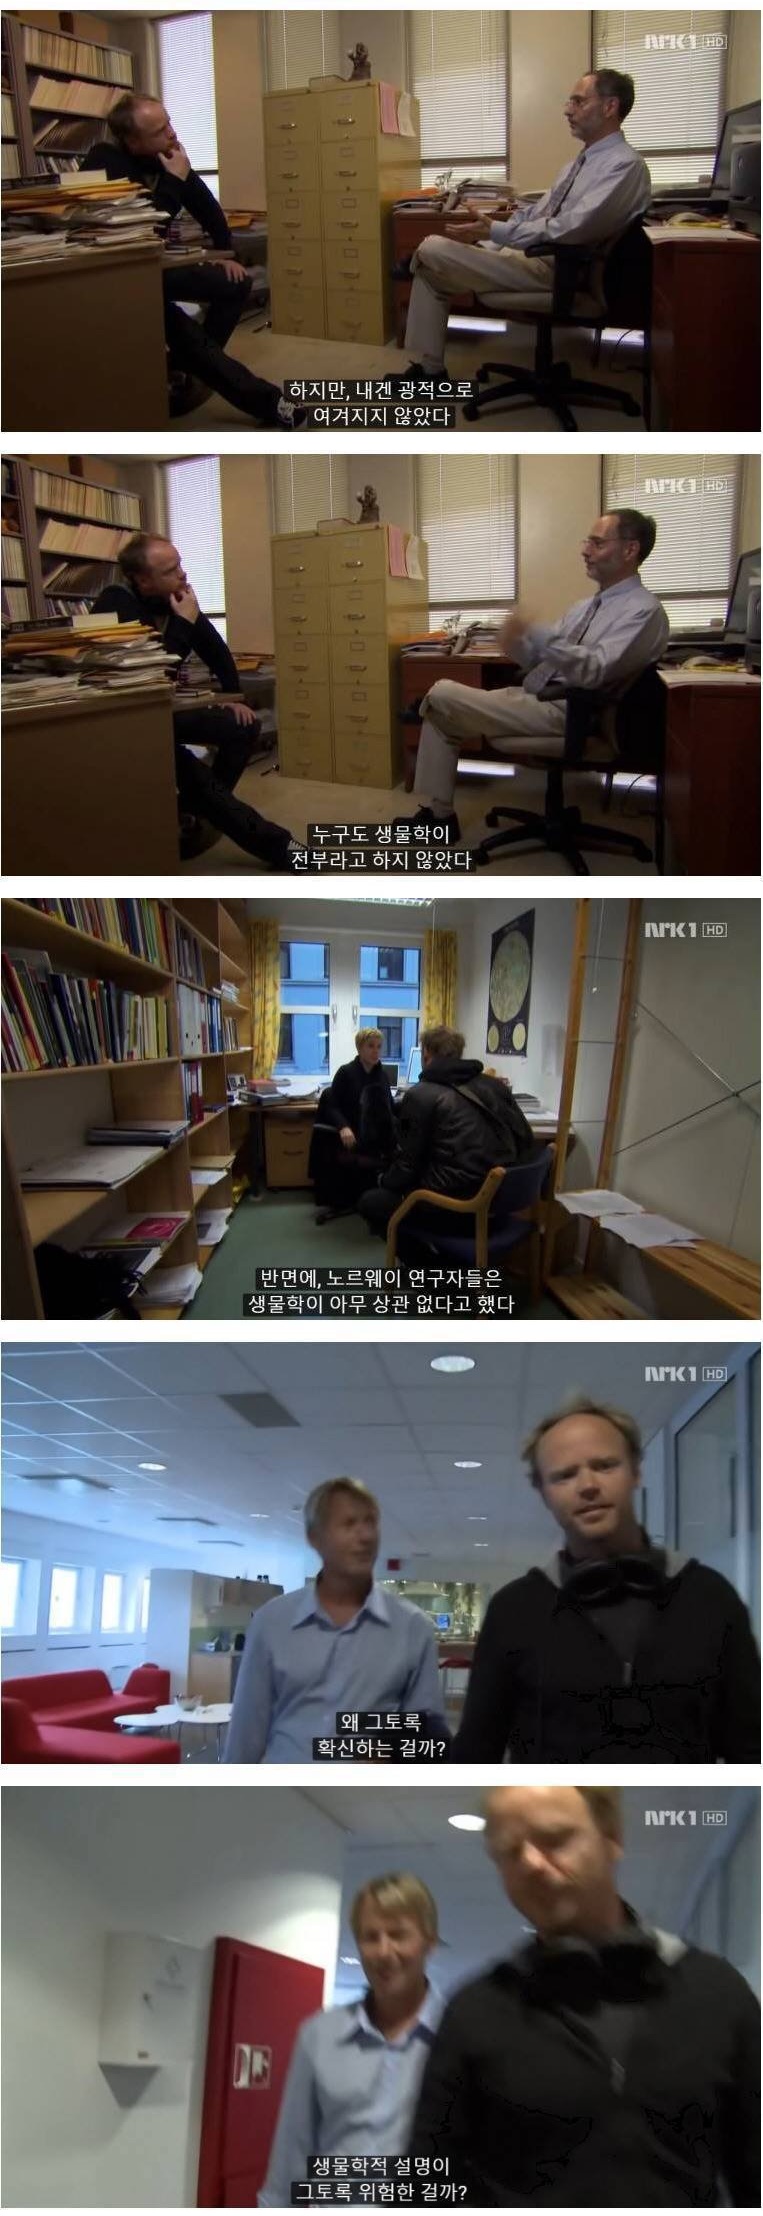 성평등 지수 1위 노르웨이의 남녀 차이 - 꾸르